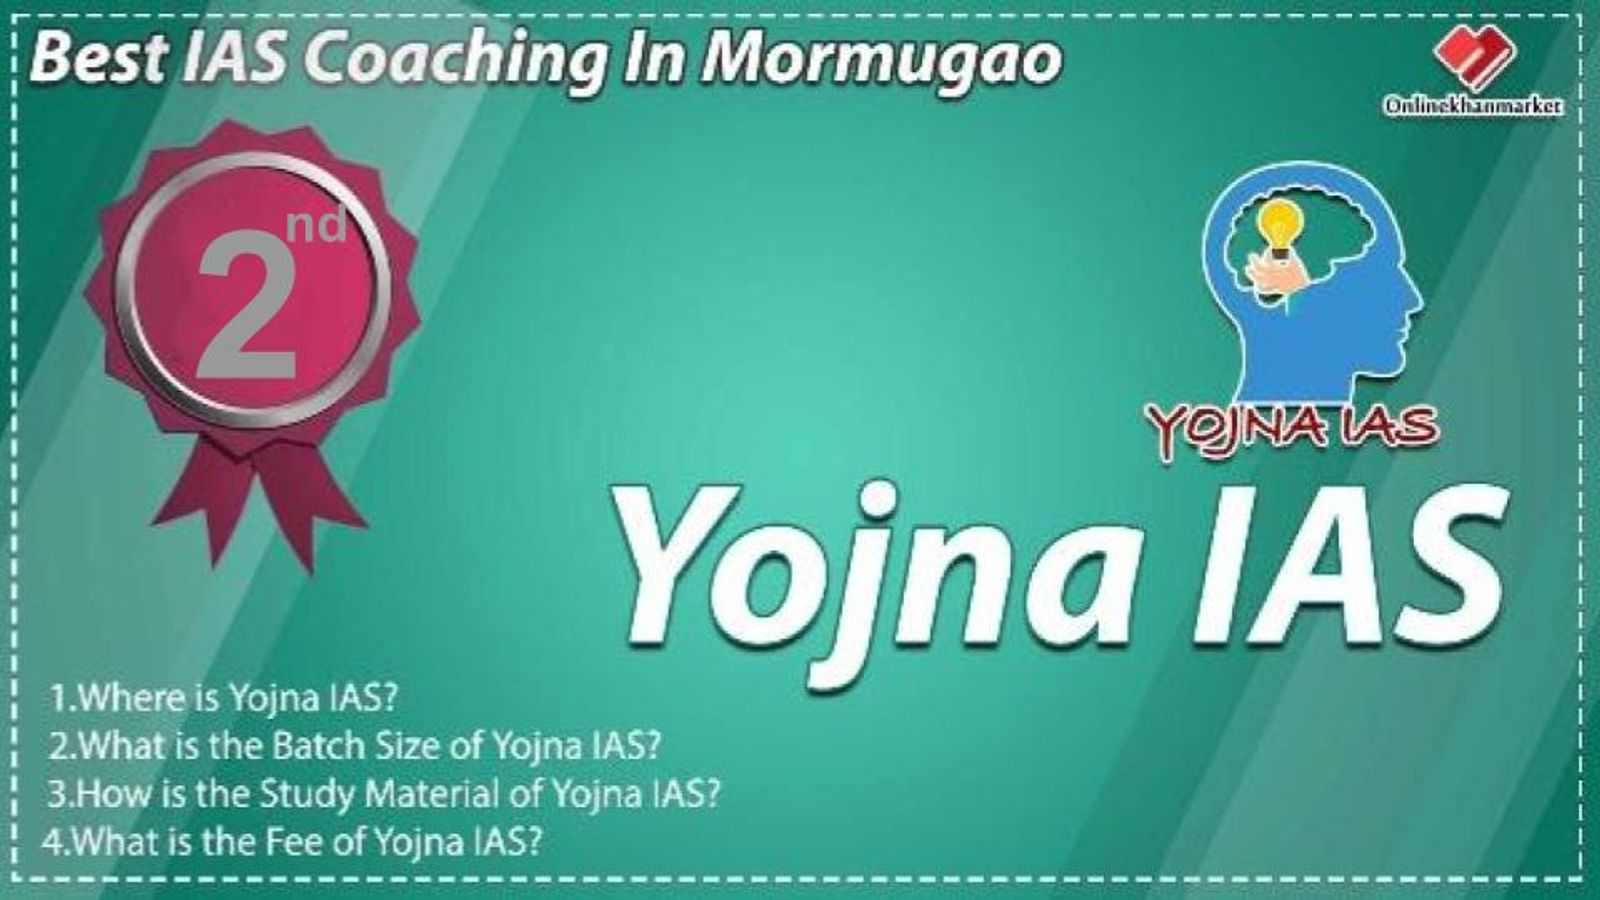 IAS Coaching in Mormugao